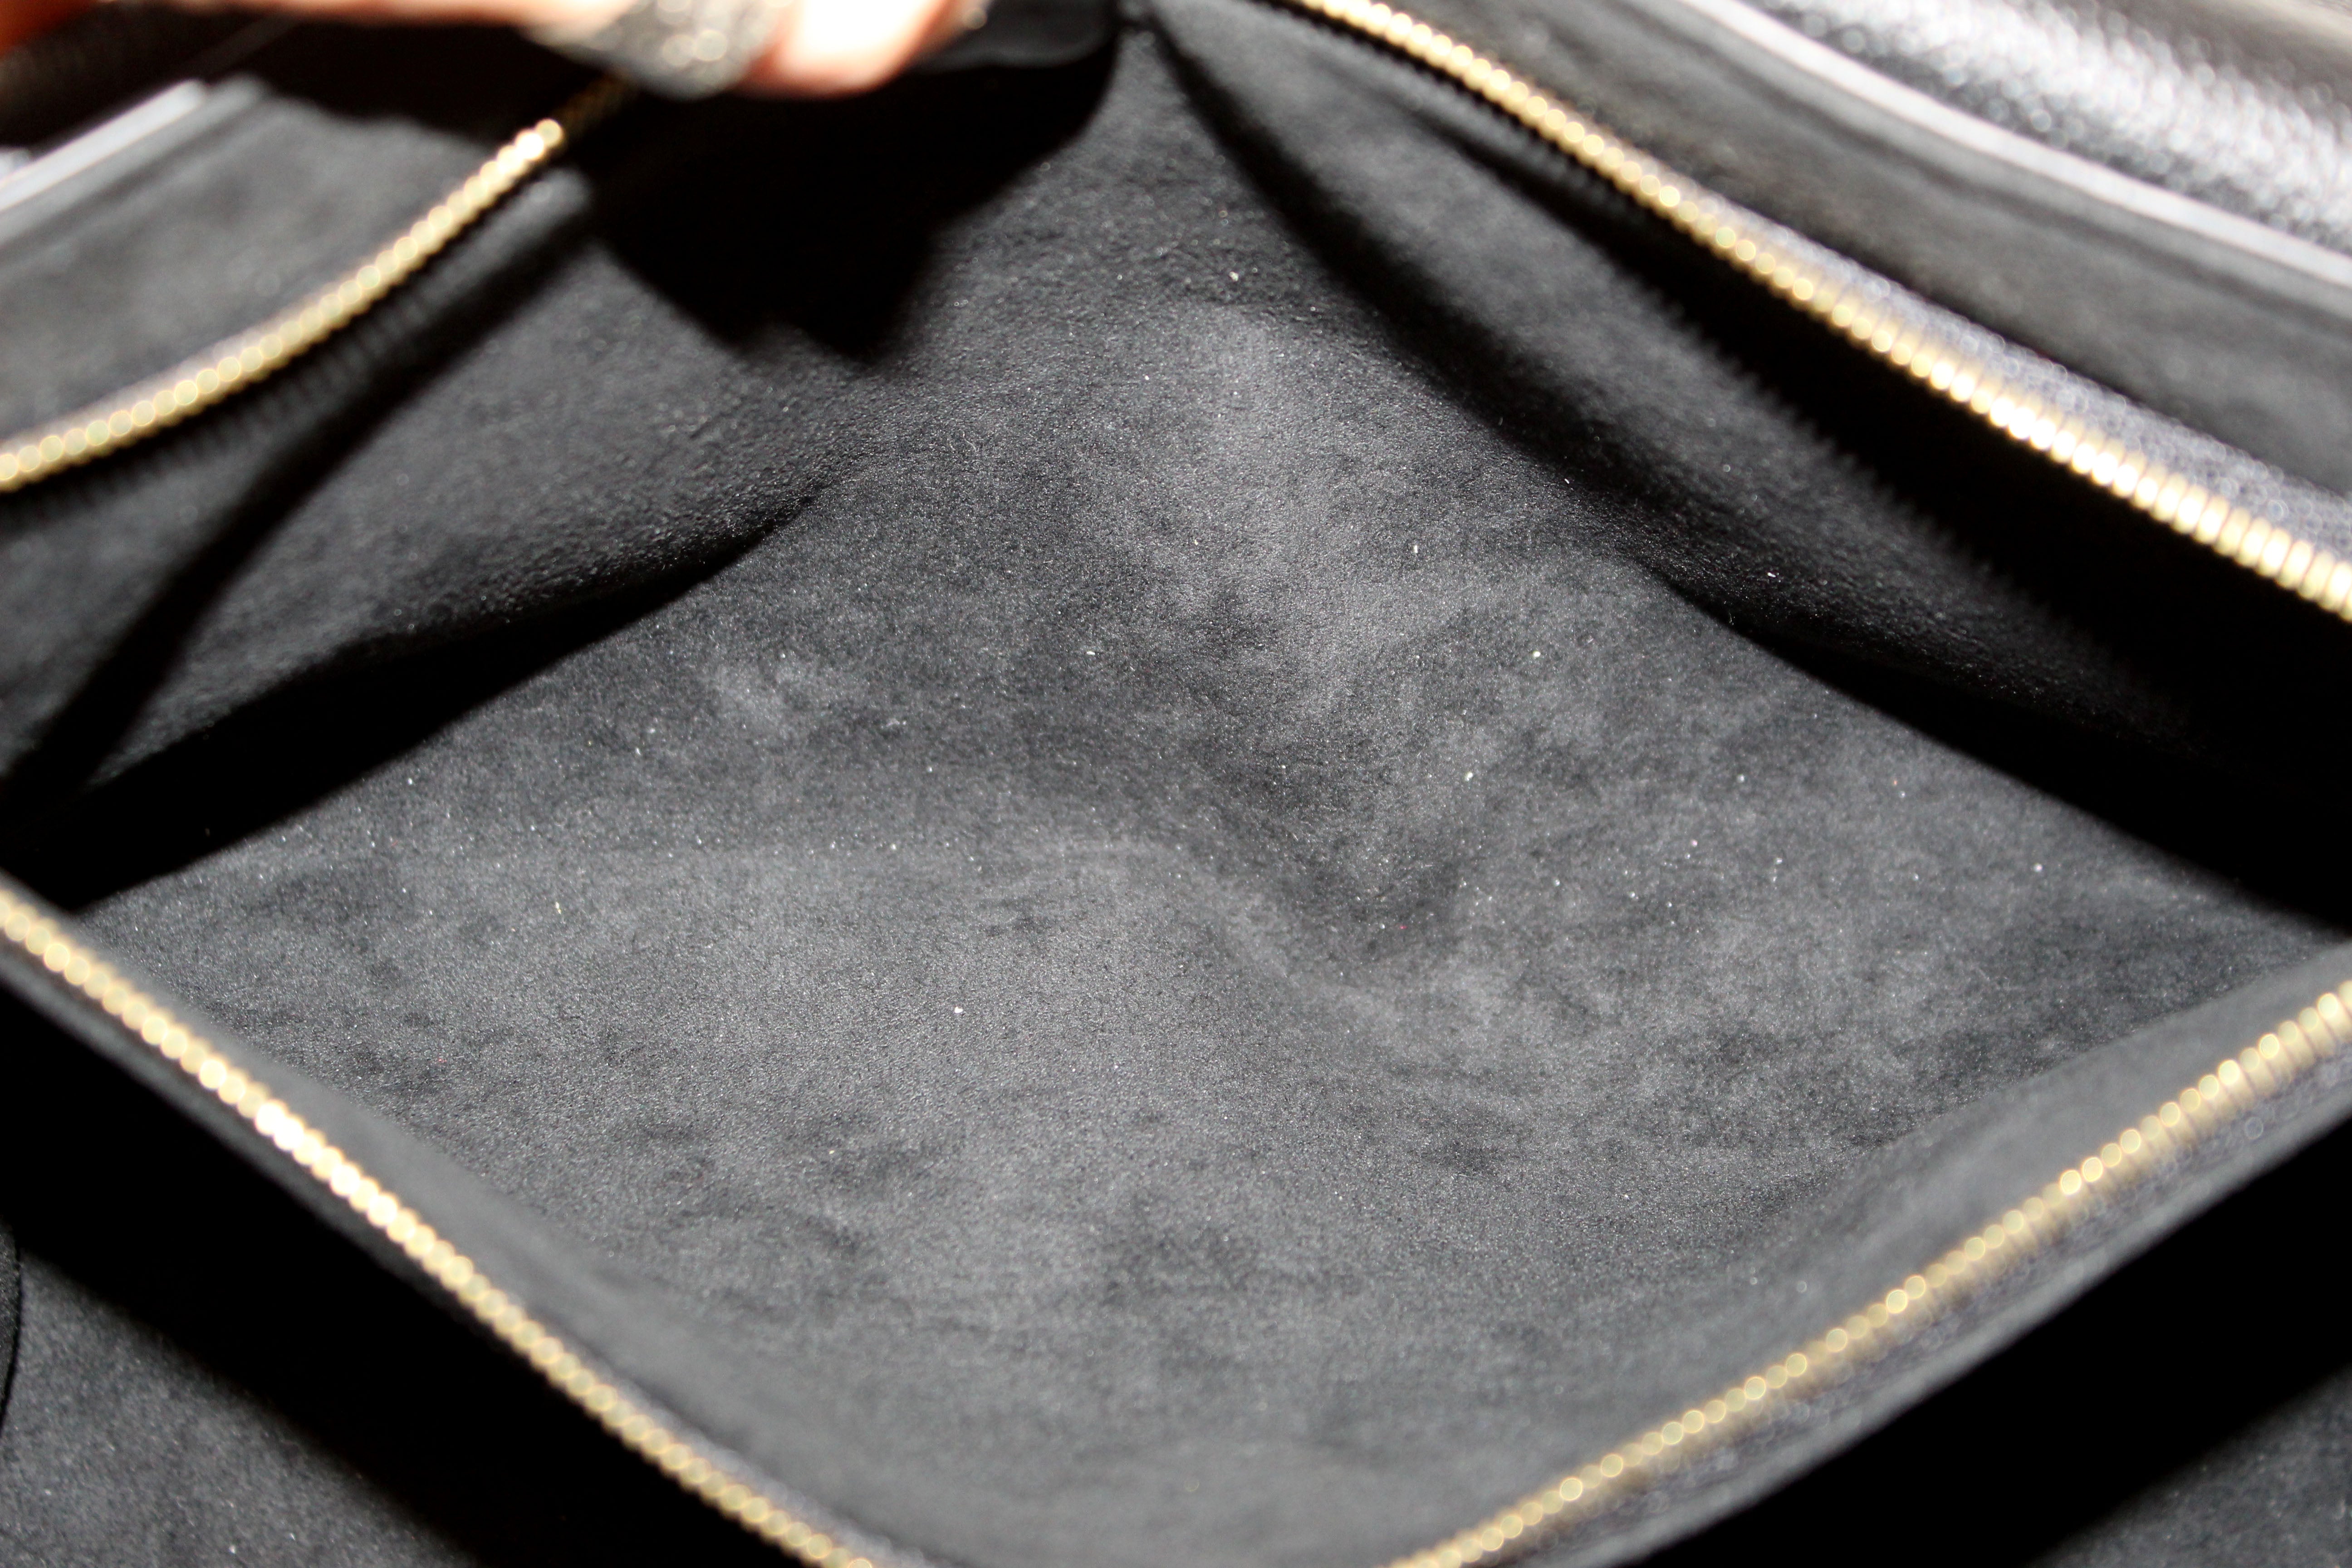 Authentic Louis Vuitton Black Monogram Empreinte Leather Vavin PM Shoulder Bag